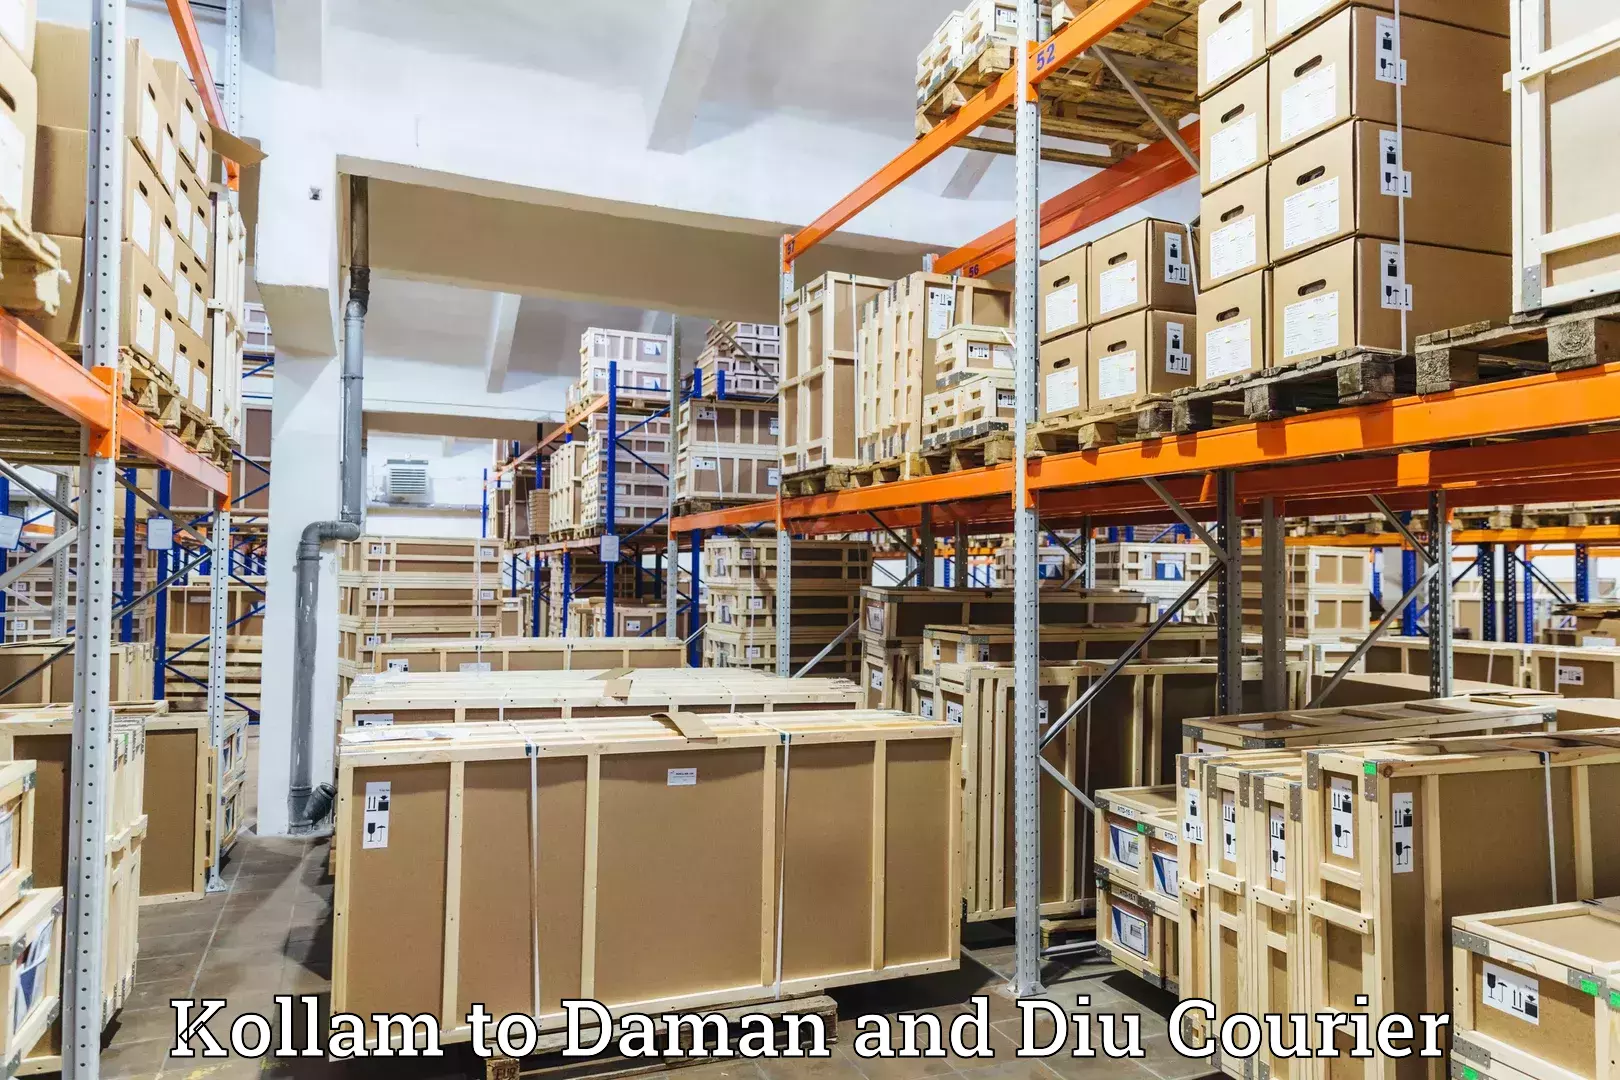 Efficient freight service Kollam to Daman and Diu